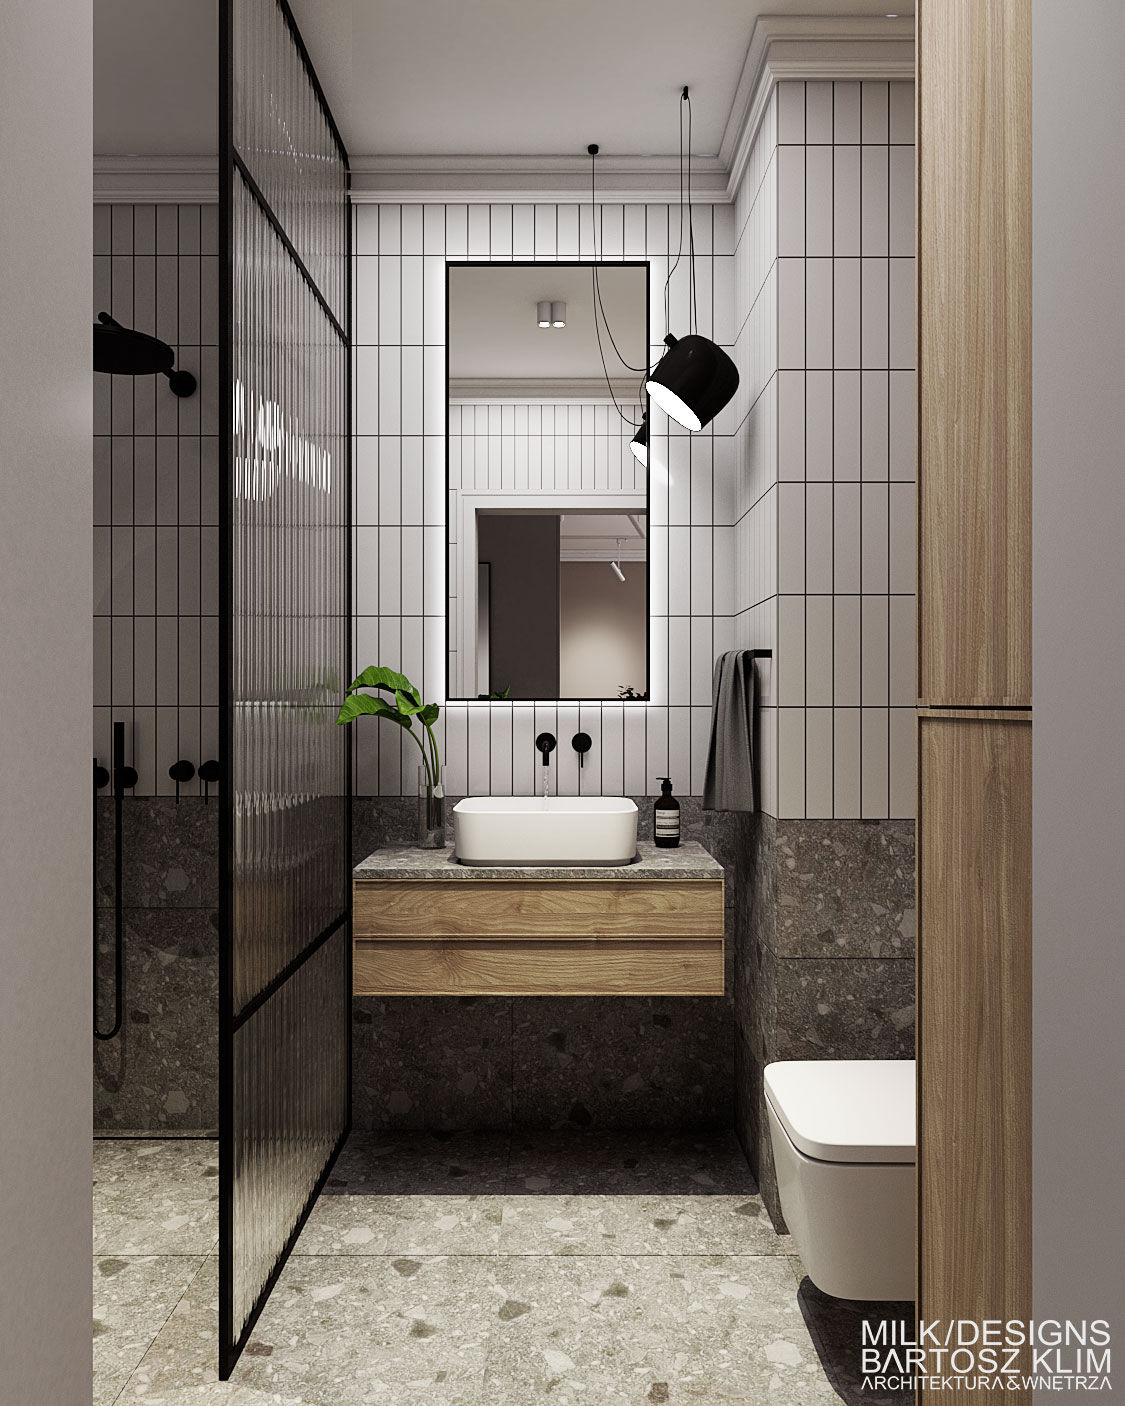 projekt wnętrza kobiecego mieszkania – łazienka z kaflami lastryko i elementami z drewna  - MILK DESIGNS PROJEKTOWANIE WNĘTRZ